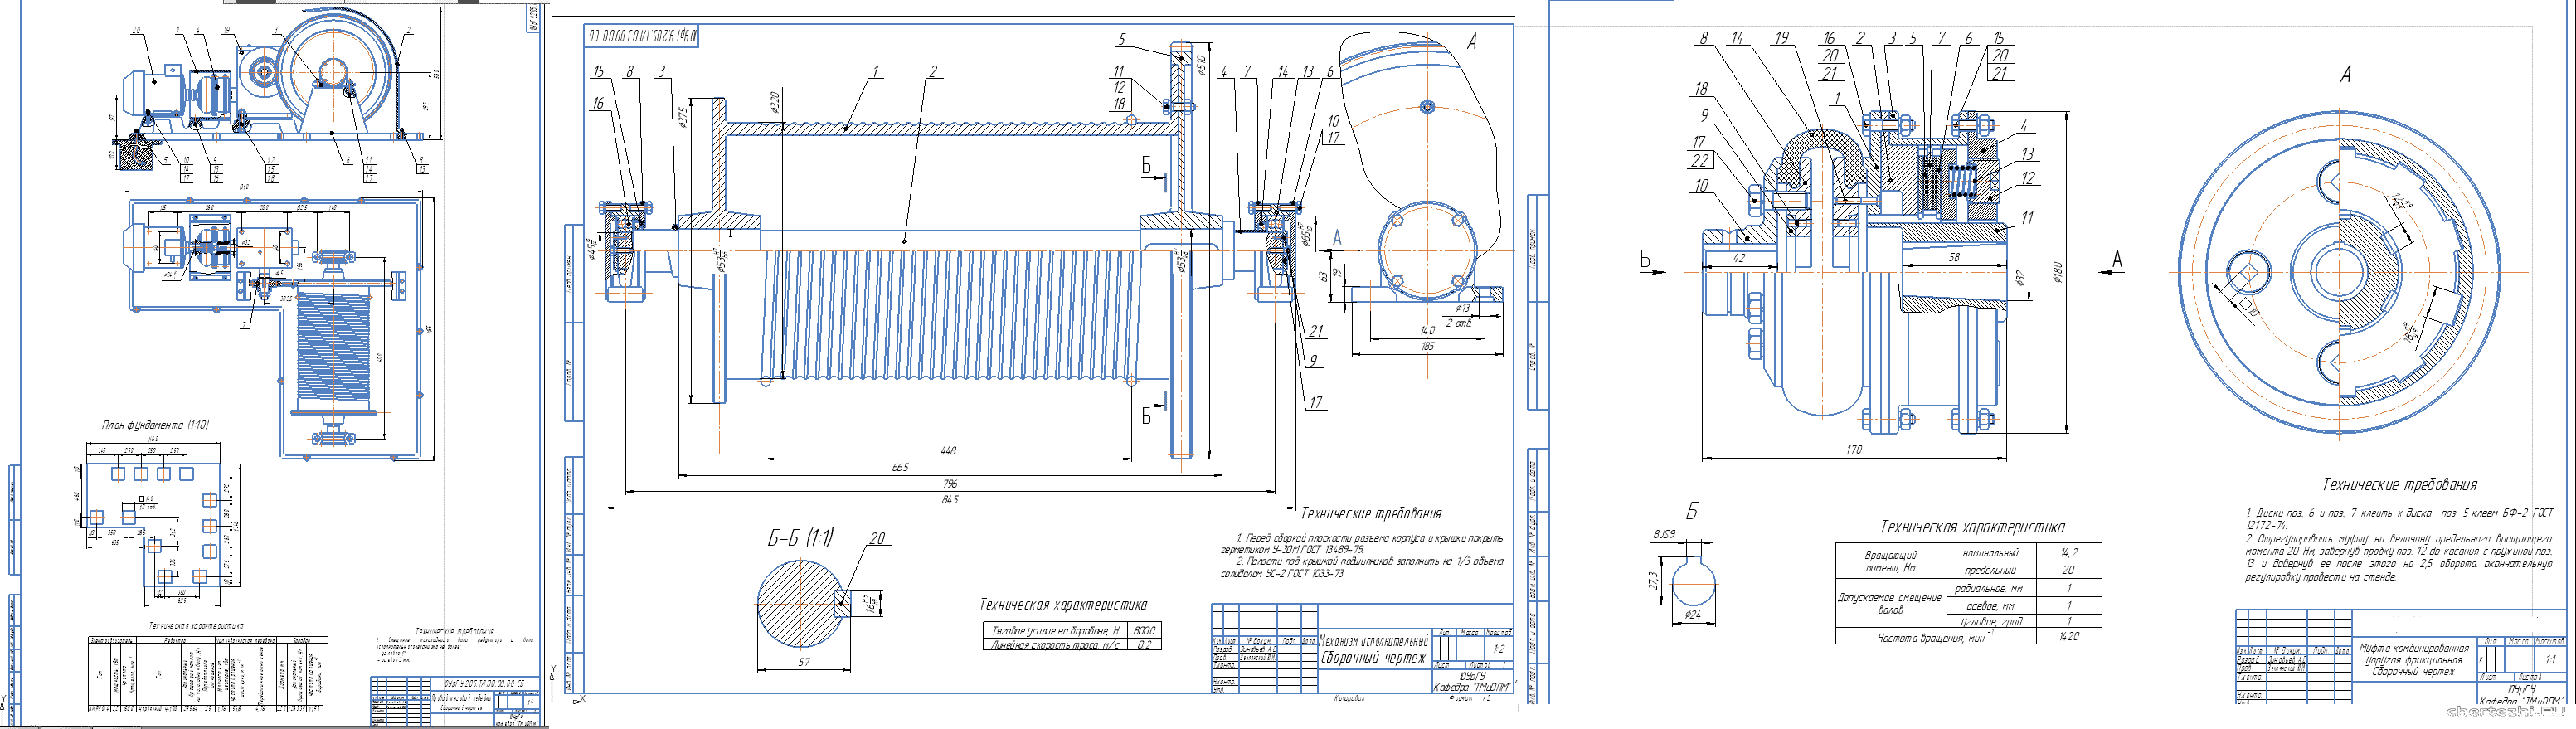 Курсовой проект - Конструирование и расчет привода тяговой лебедки